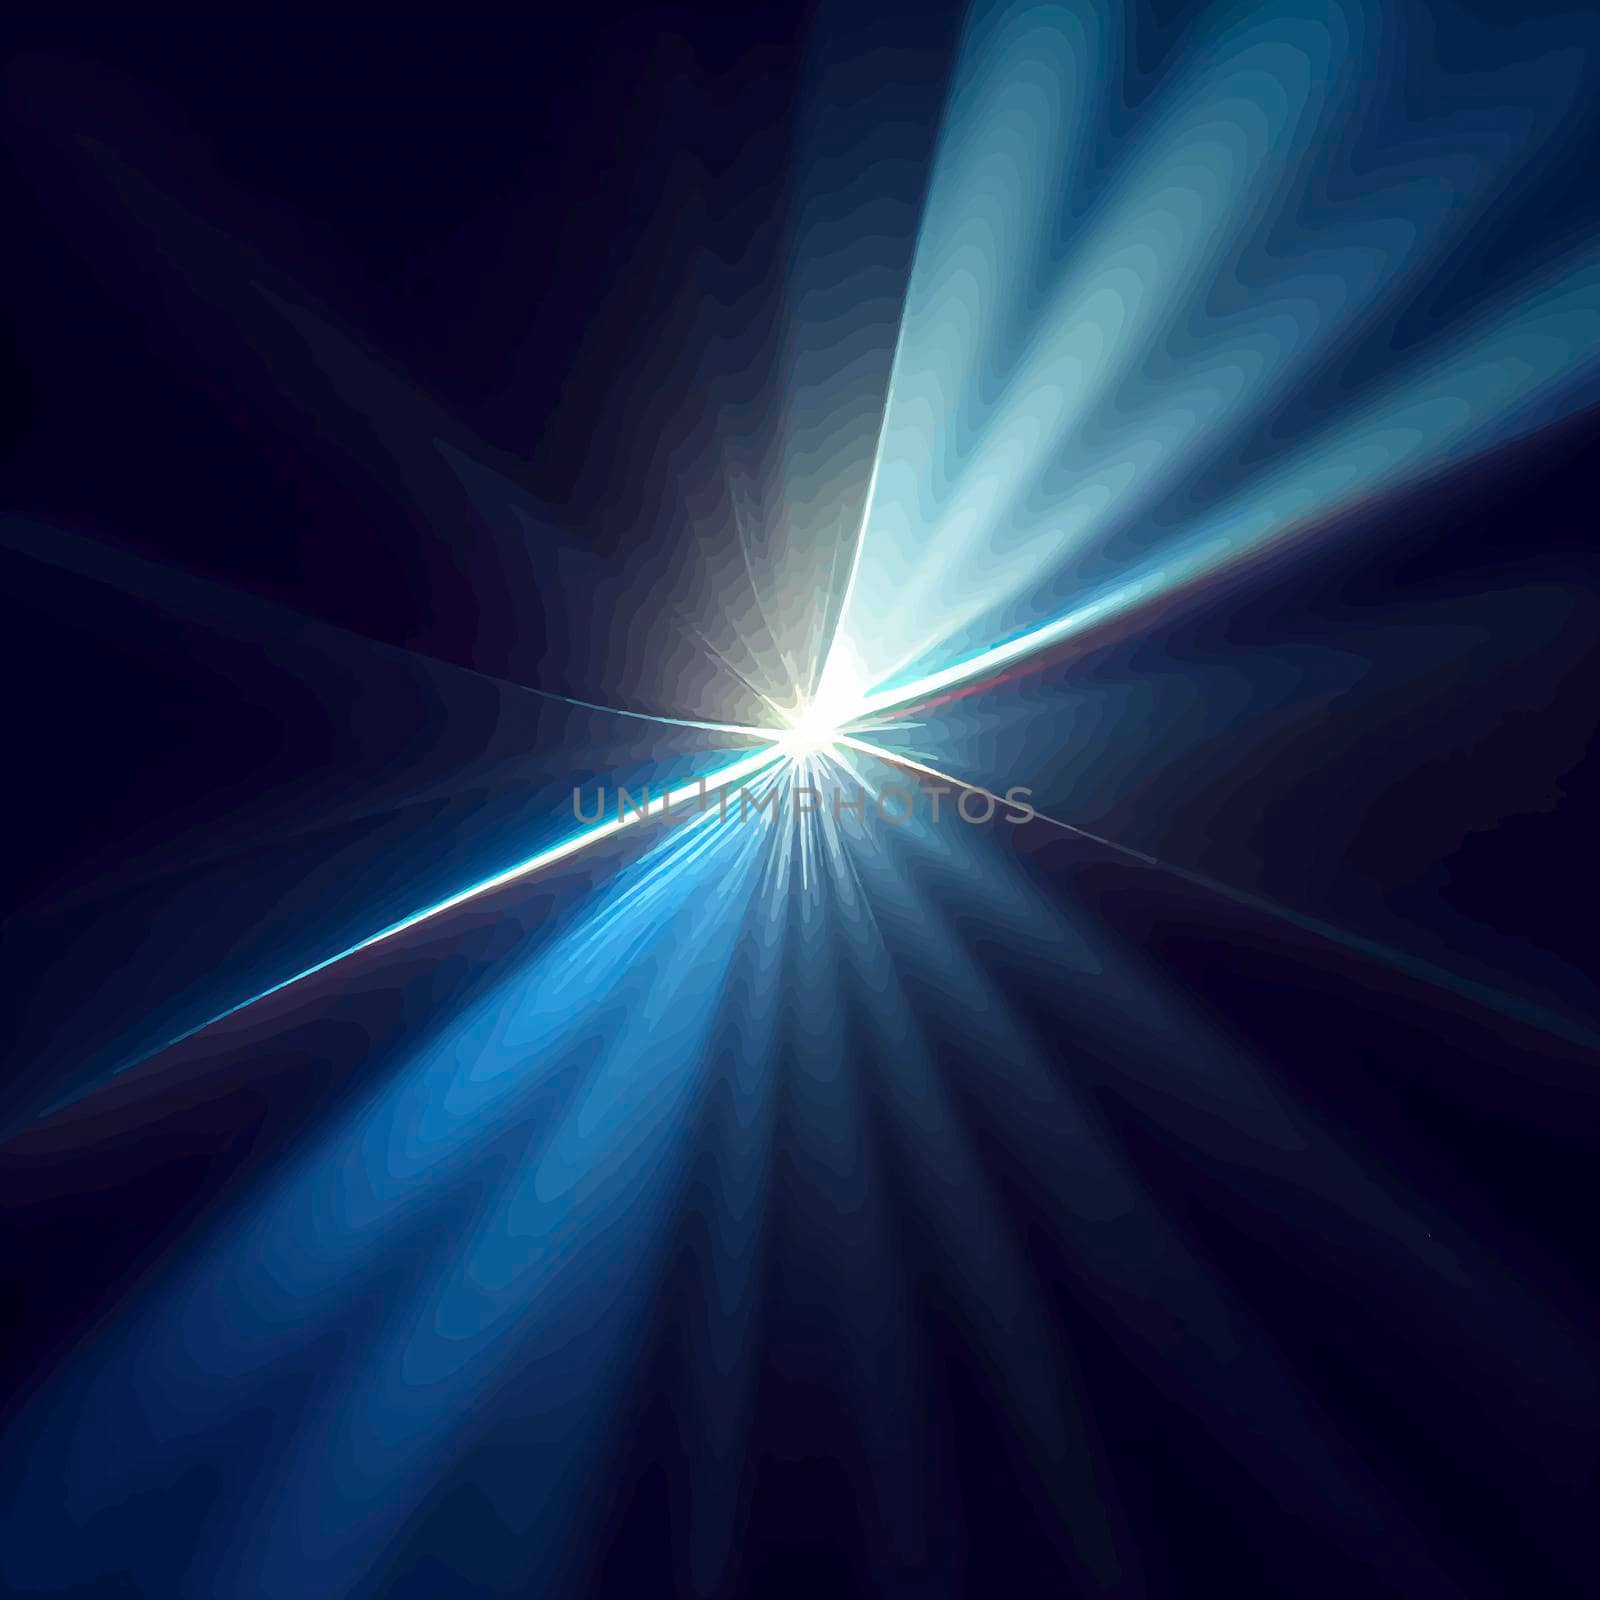 blue Light Lens flare on black background. Lens flare with bright light isolated with a black background.